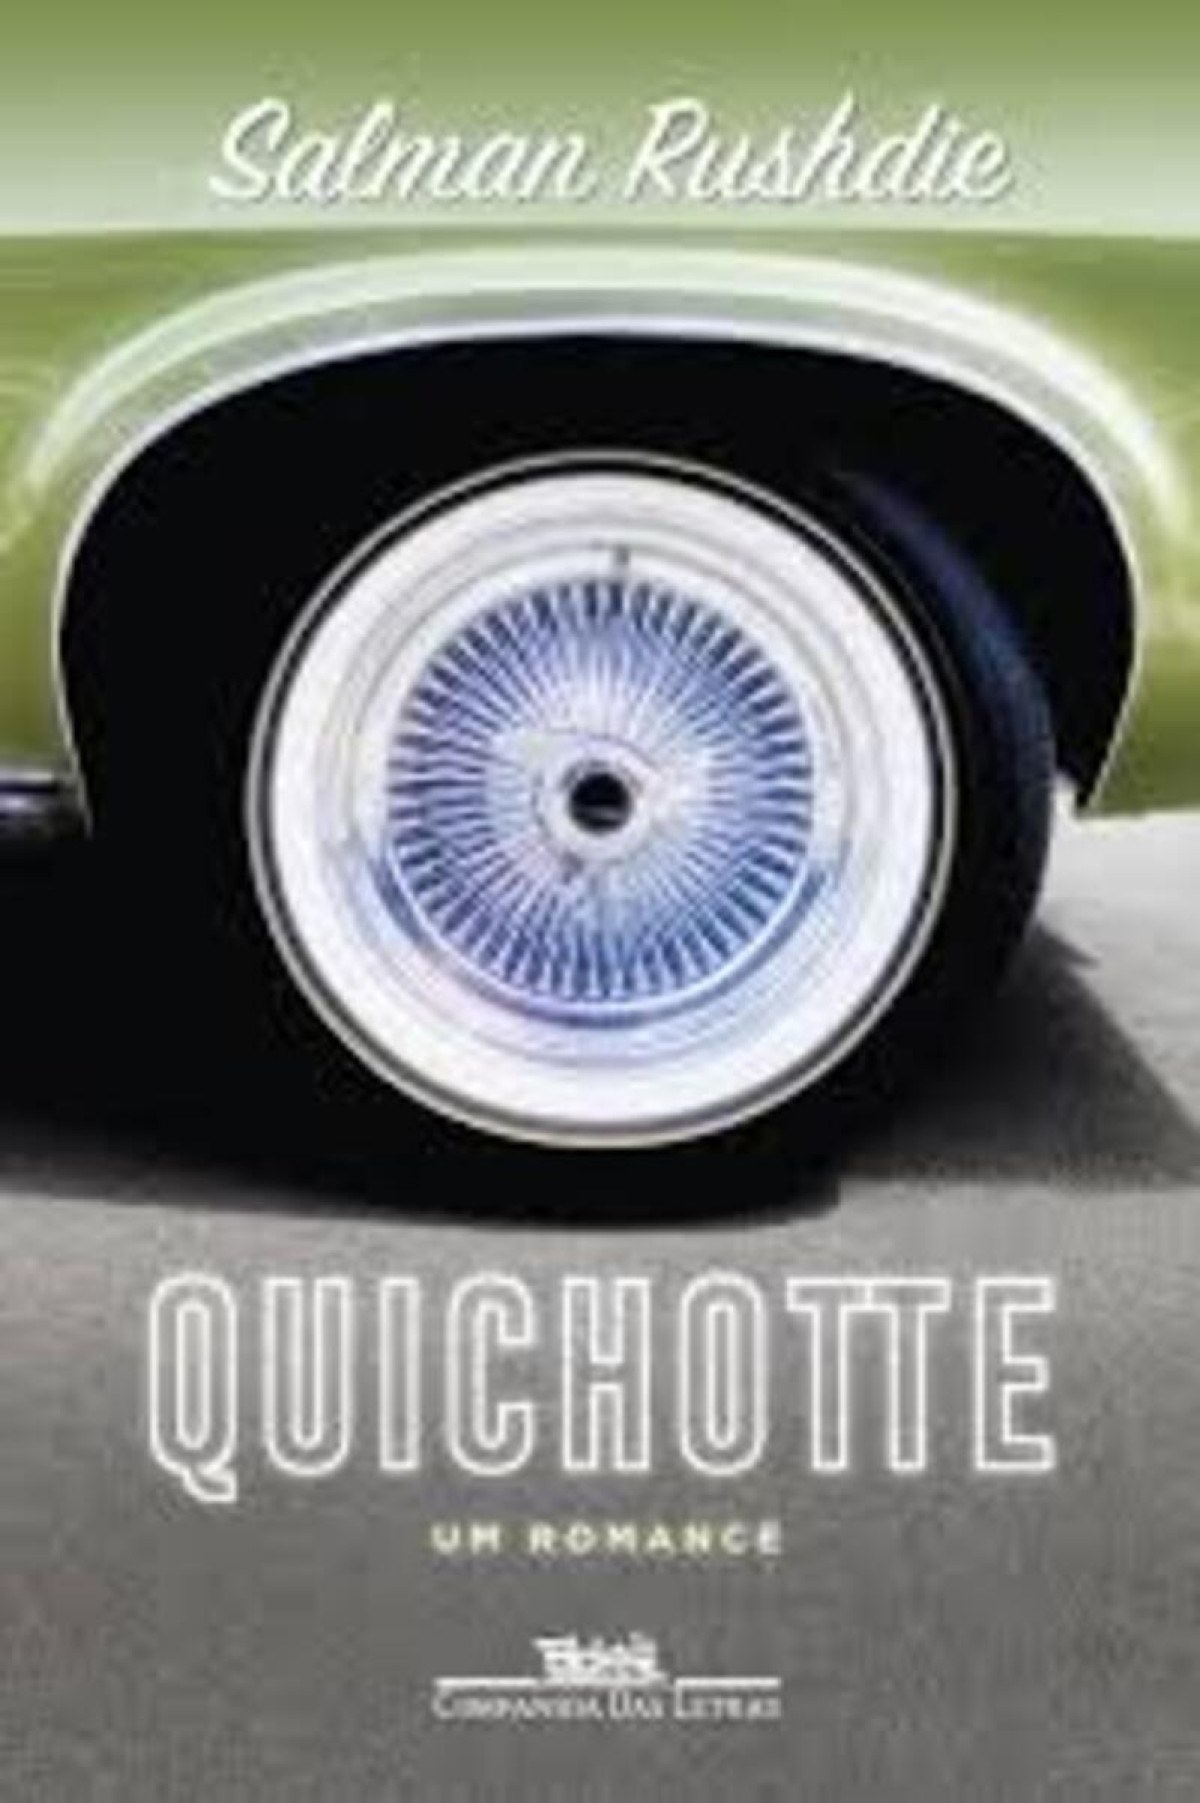 capa do livro "Quichotte" (2019) 